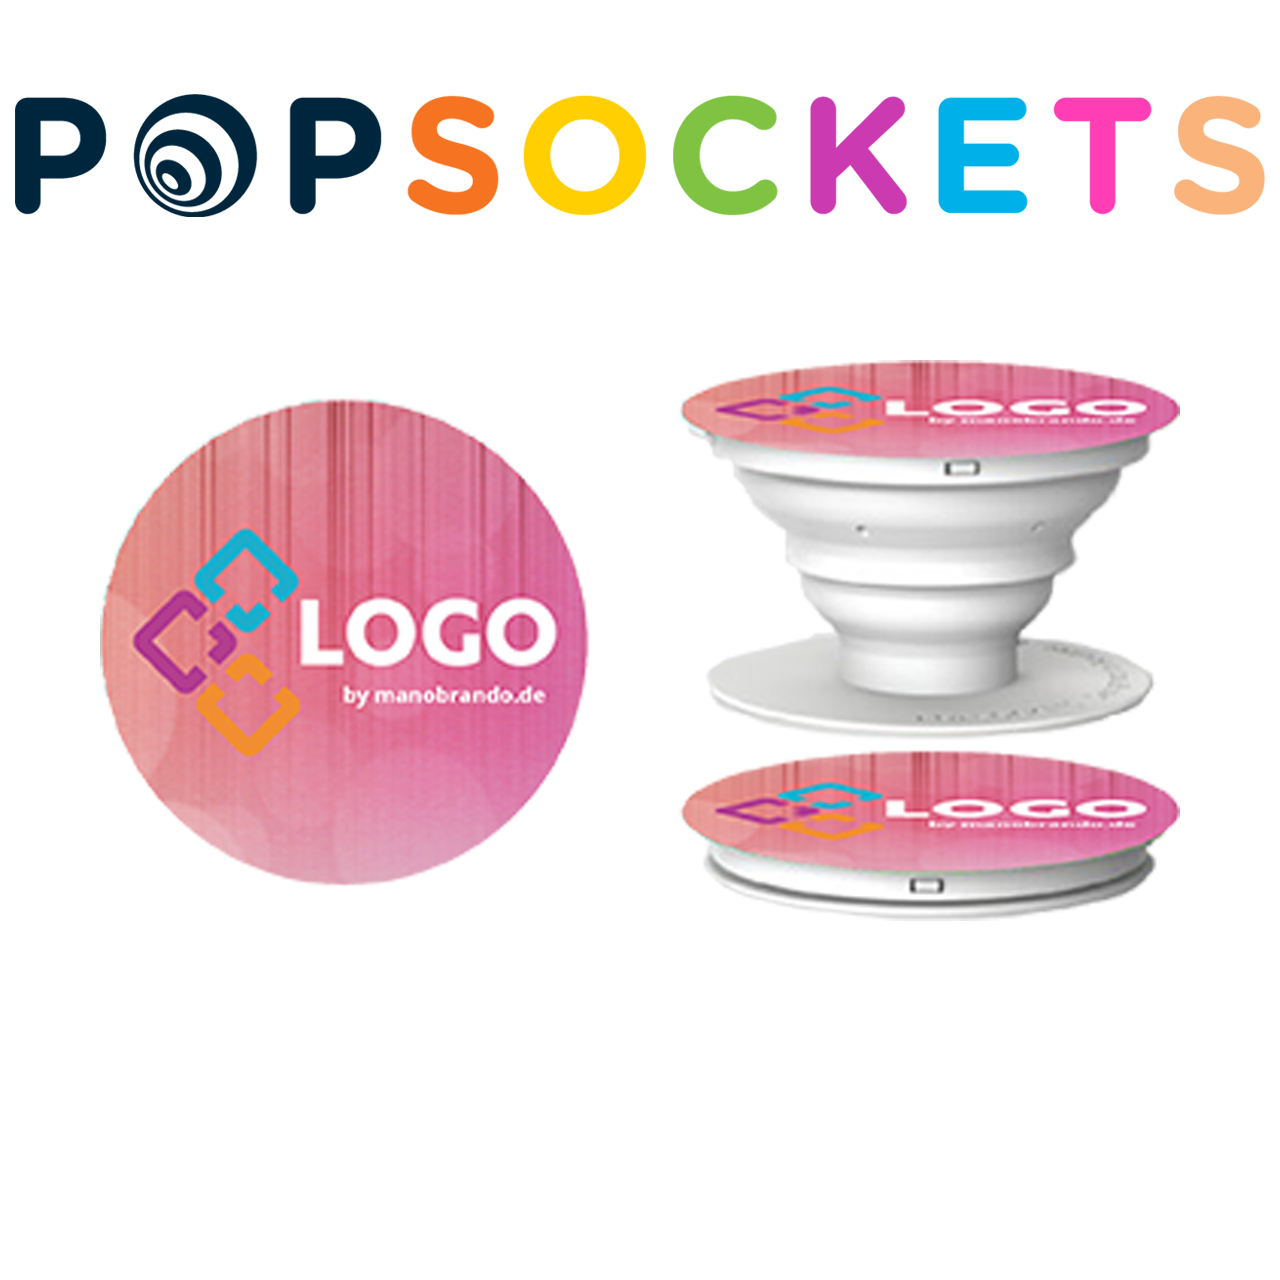 Popsockets bedrucken lassen mit Logo als Werbemittel